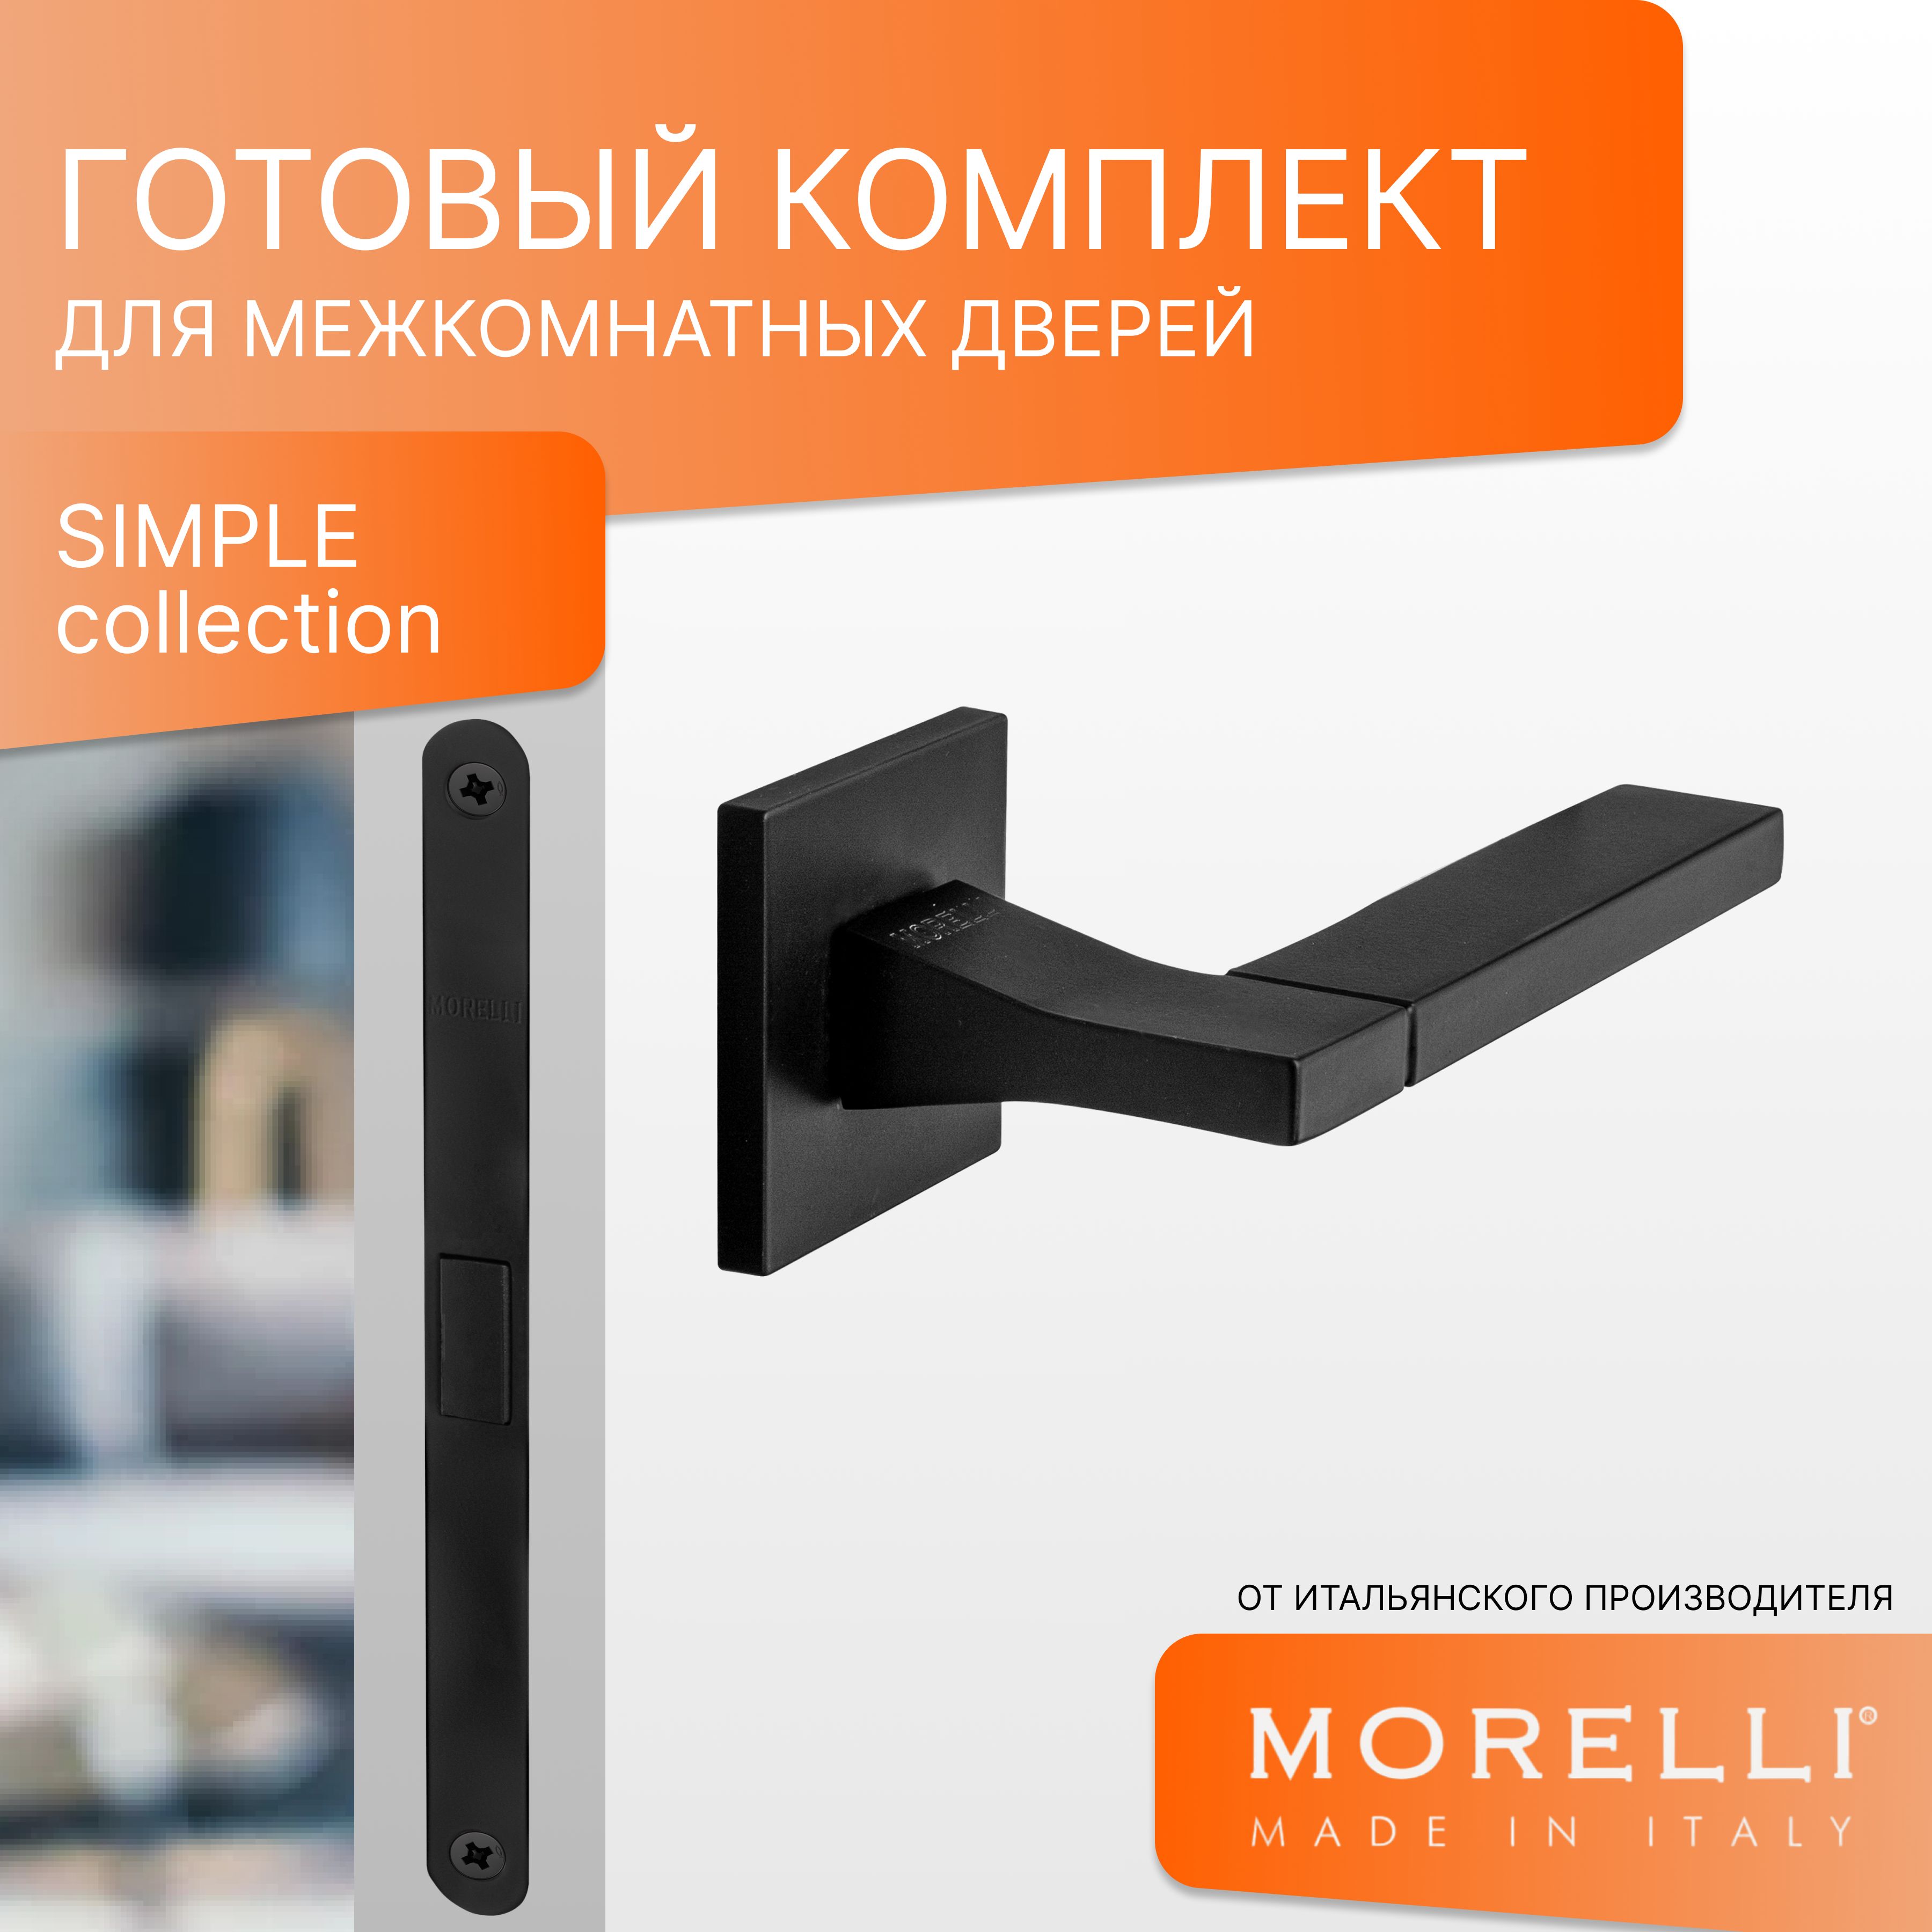 Комплект для двери MORELLI ручки MH 47 S6 BL + магнитный замок магнитная сантехническая защелка morelli